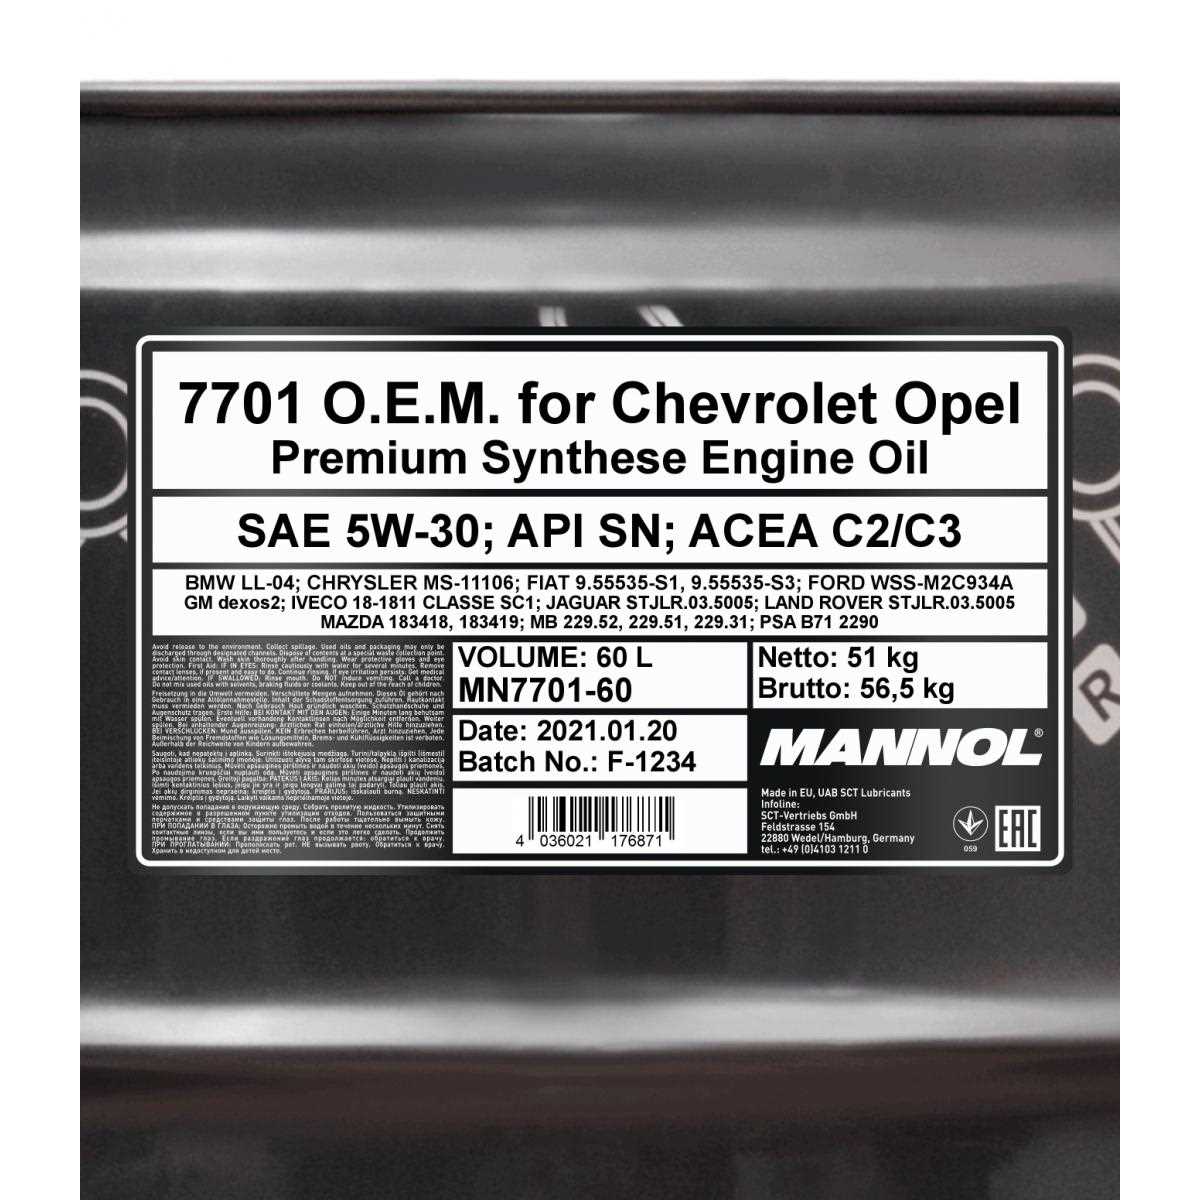 60 Liter MANNOL für Chevrolet Opel 5W-30 API SN ACEA C3 Engine Oil Motoröl